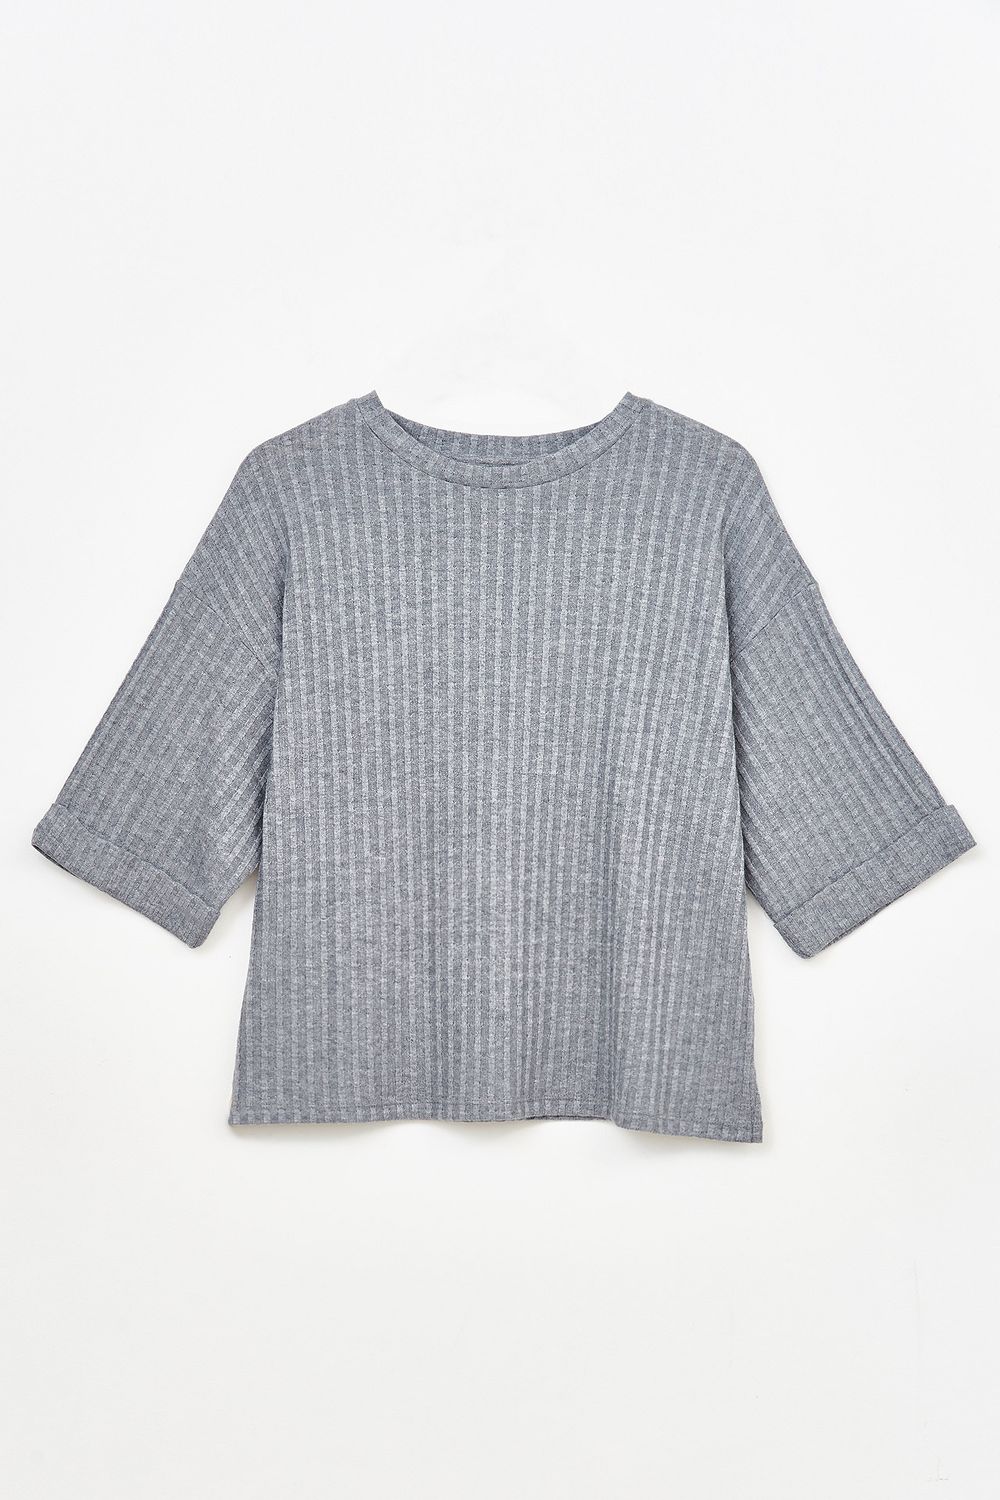 Sweater-Cal-Gris-Oscuro-42